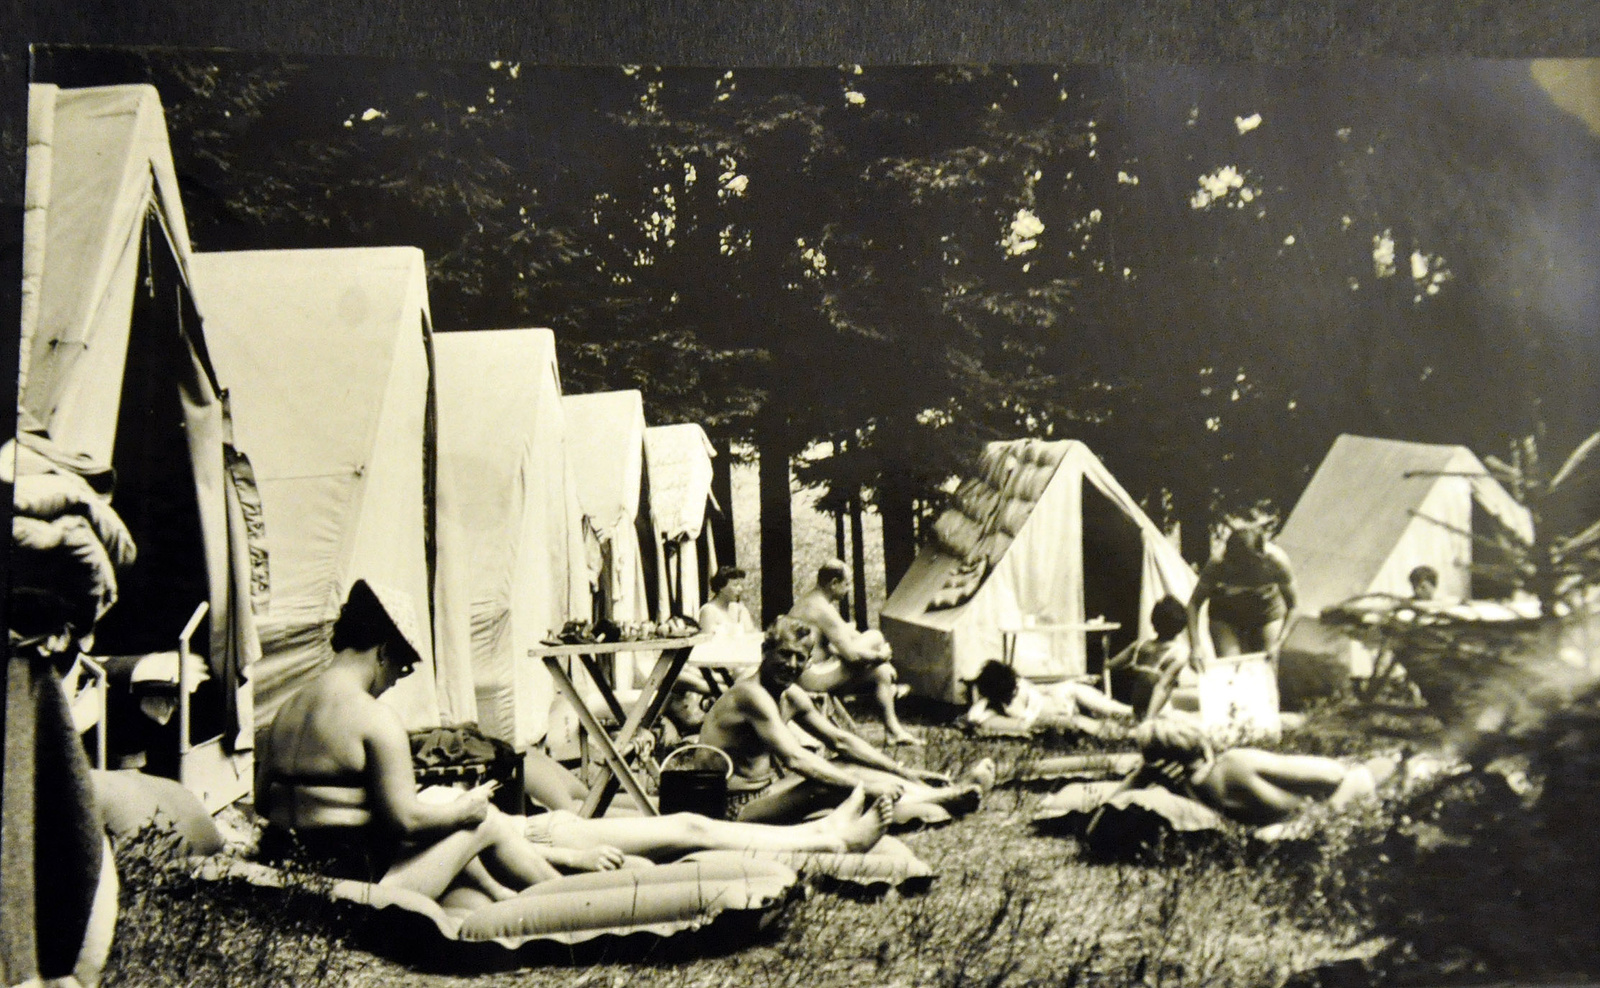 Podívejte se na retro snímky z tábora: celtové stany, ohniště a pohoda -  Jablonecký deník